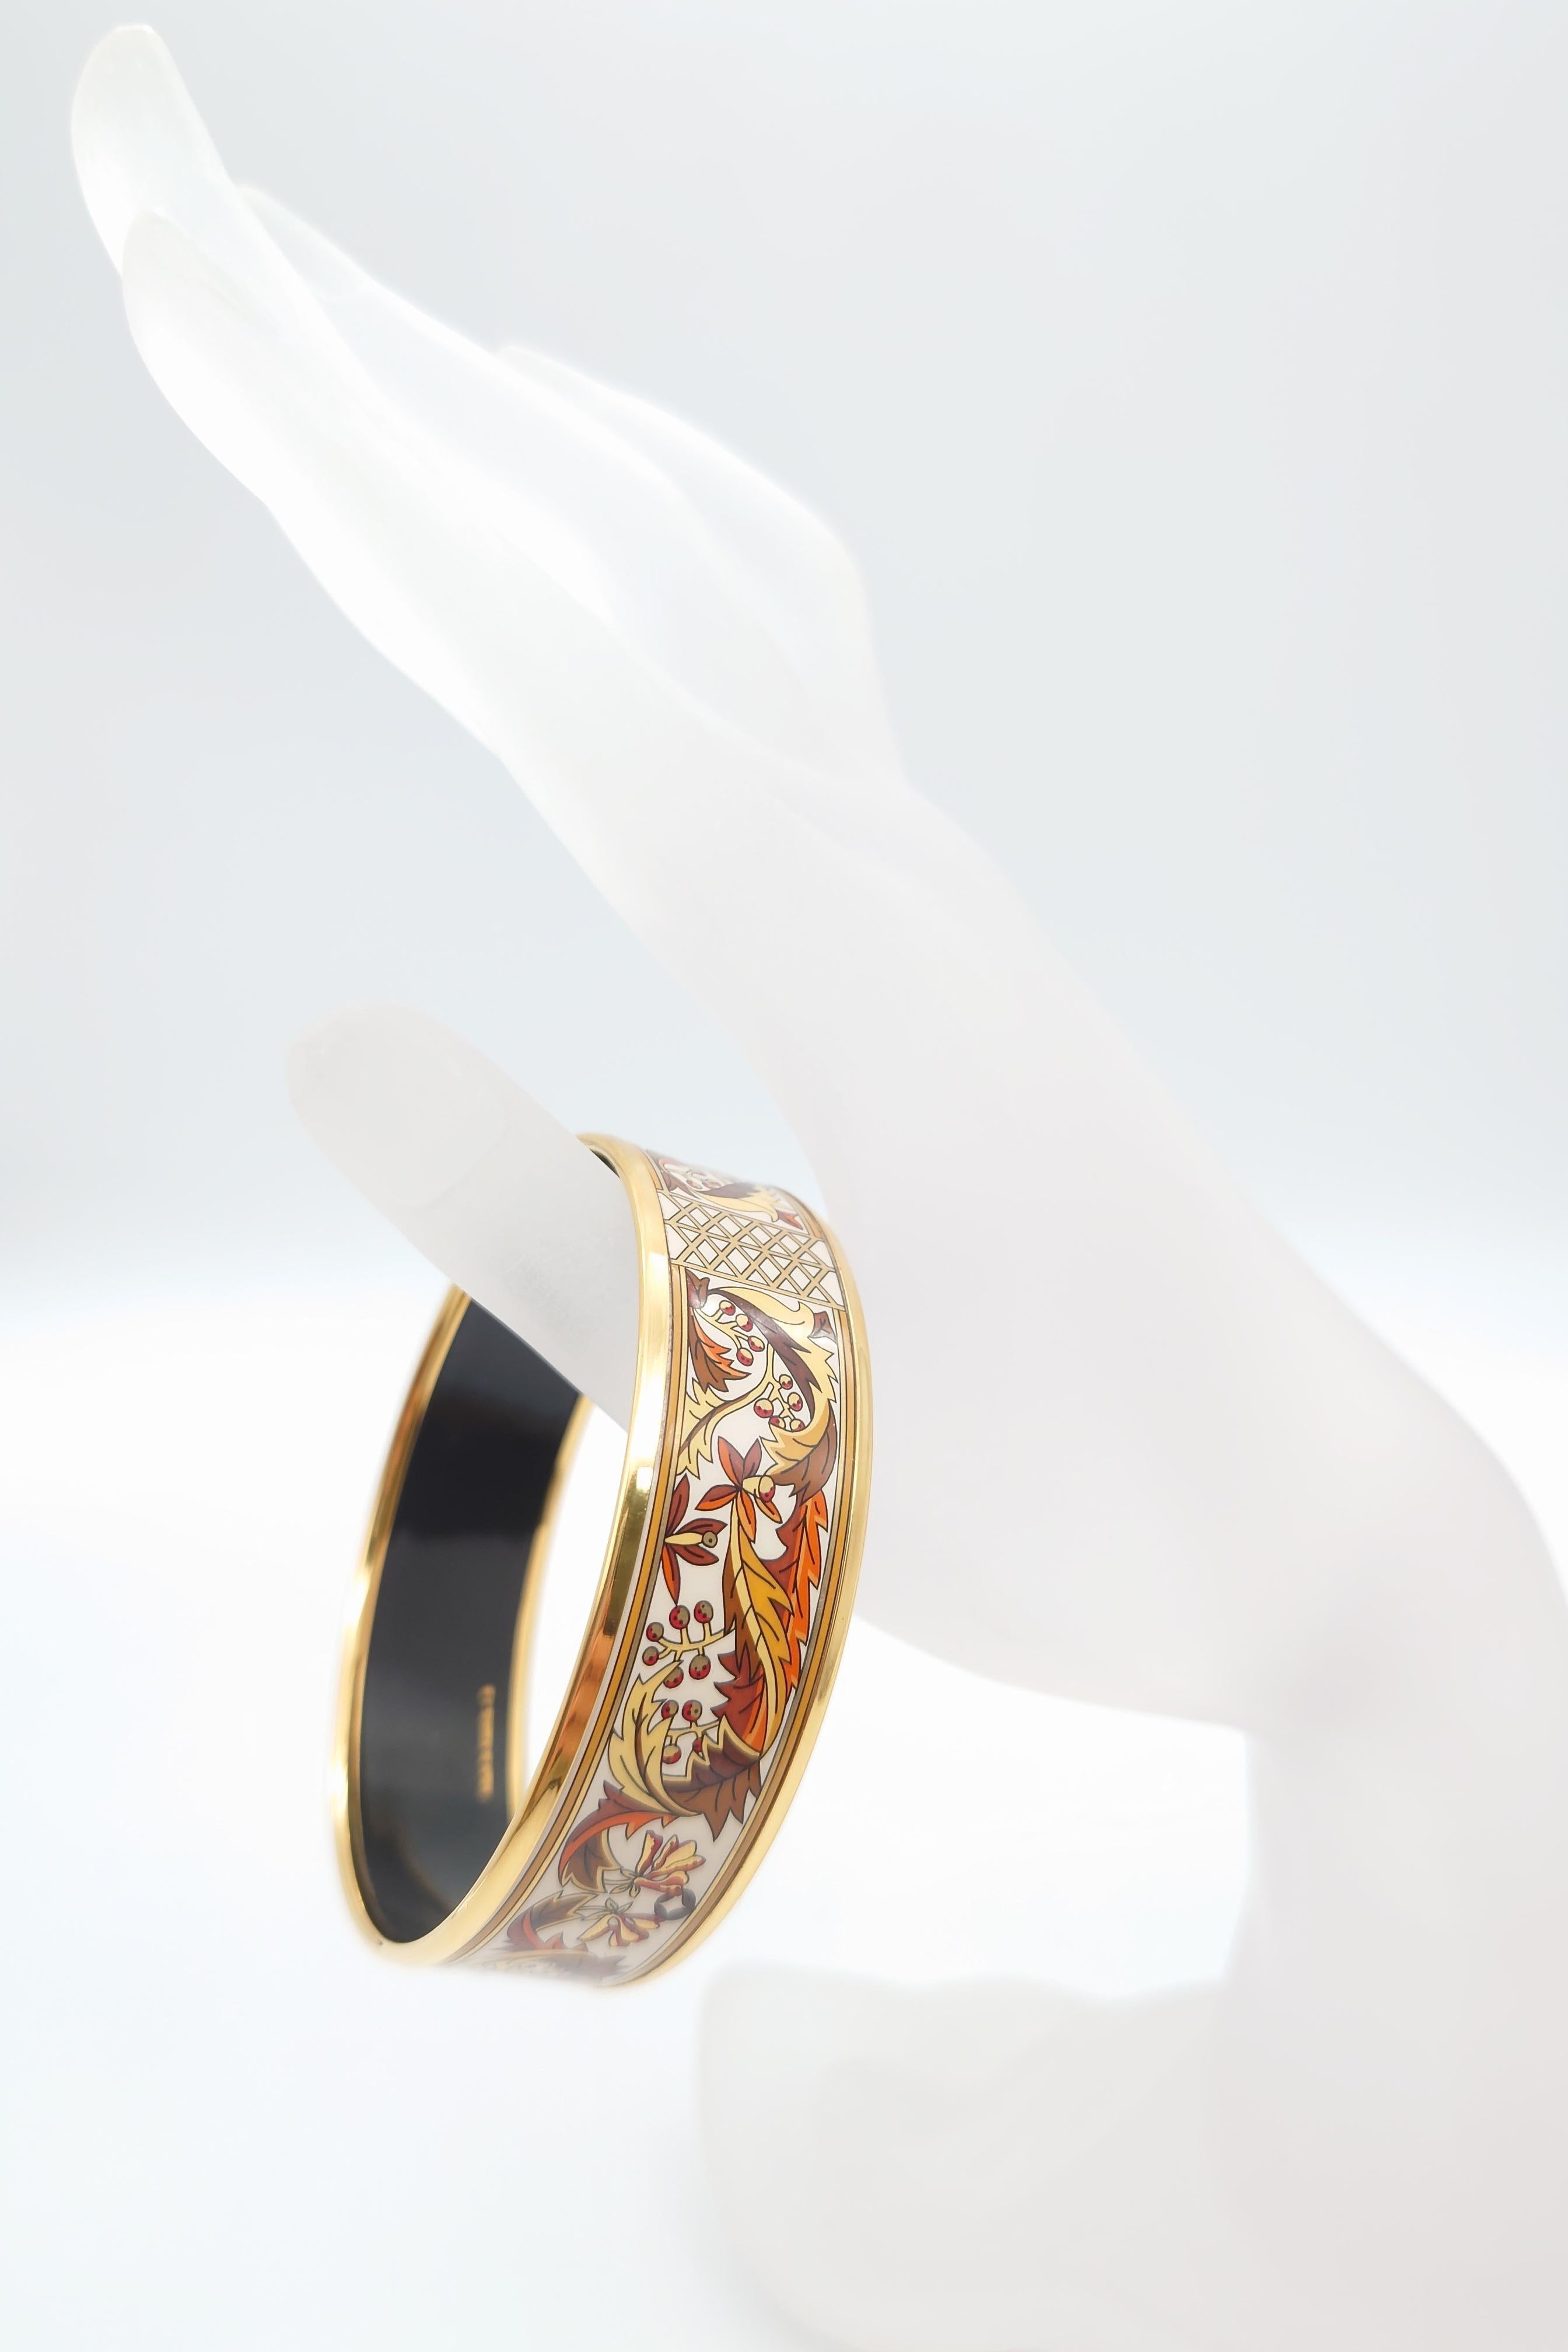 Authentic Hermes Bracelet Vintage Enamel Bangle ”Leaf” 3